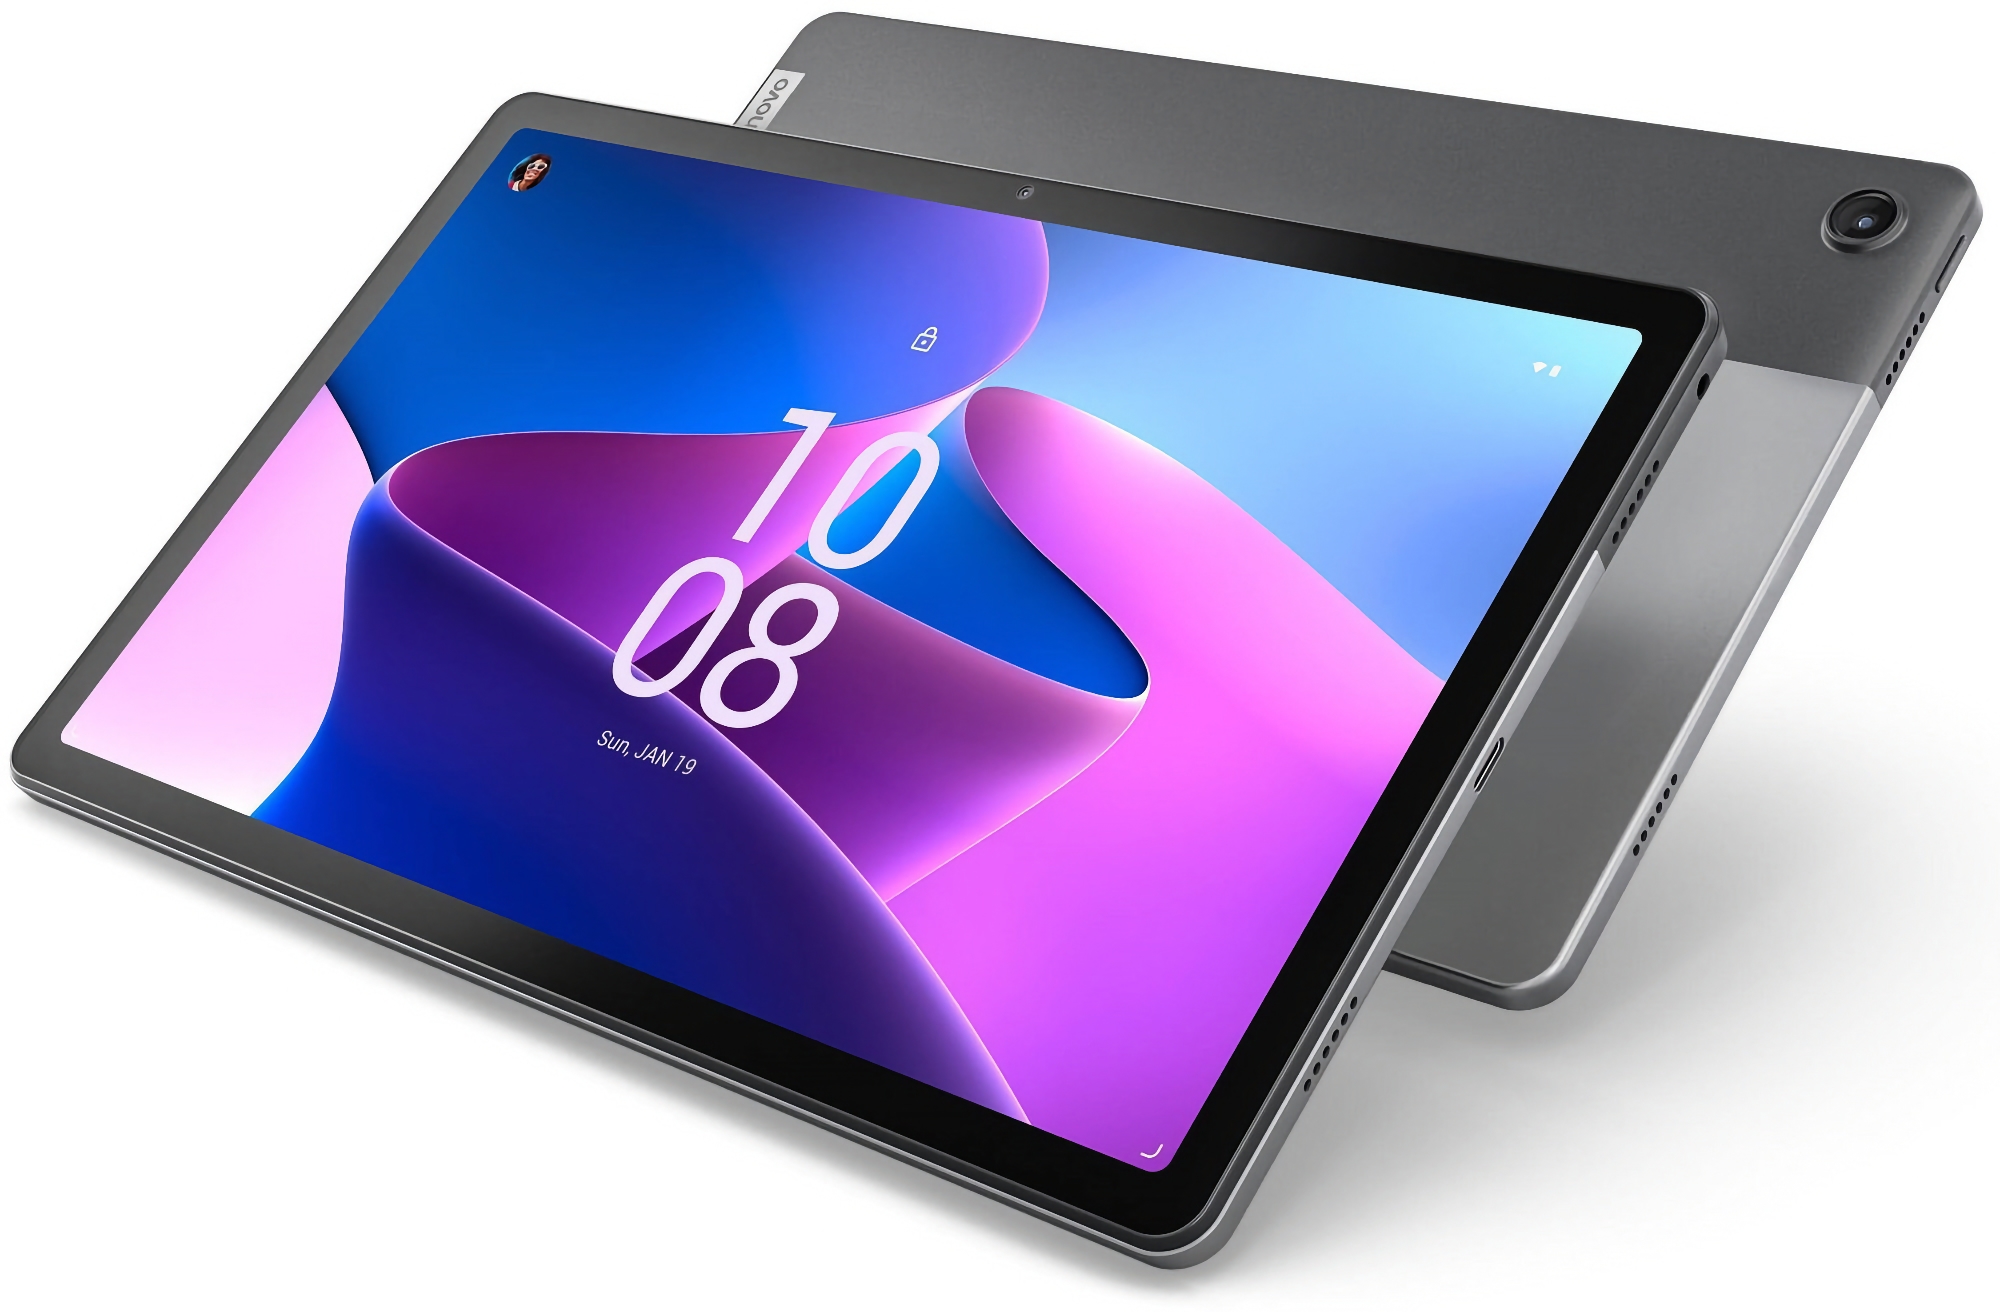 Lenovo Tab M10 Plus (3. generation) på Amazon: tablet med 10,6" skærm og MediaTek Helio G80-chip til $149 ($40 rabat)